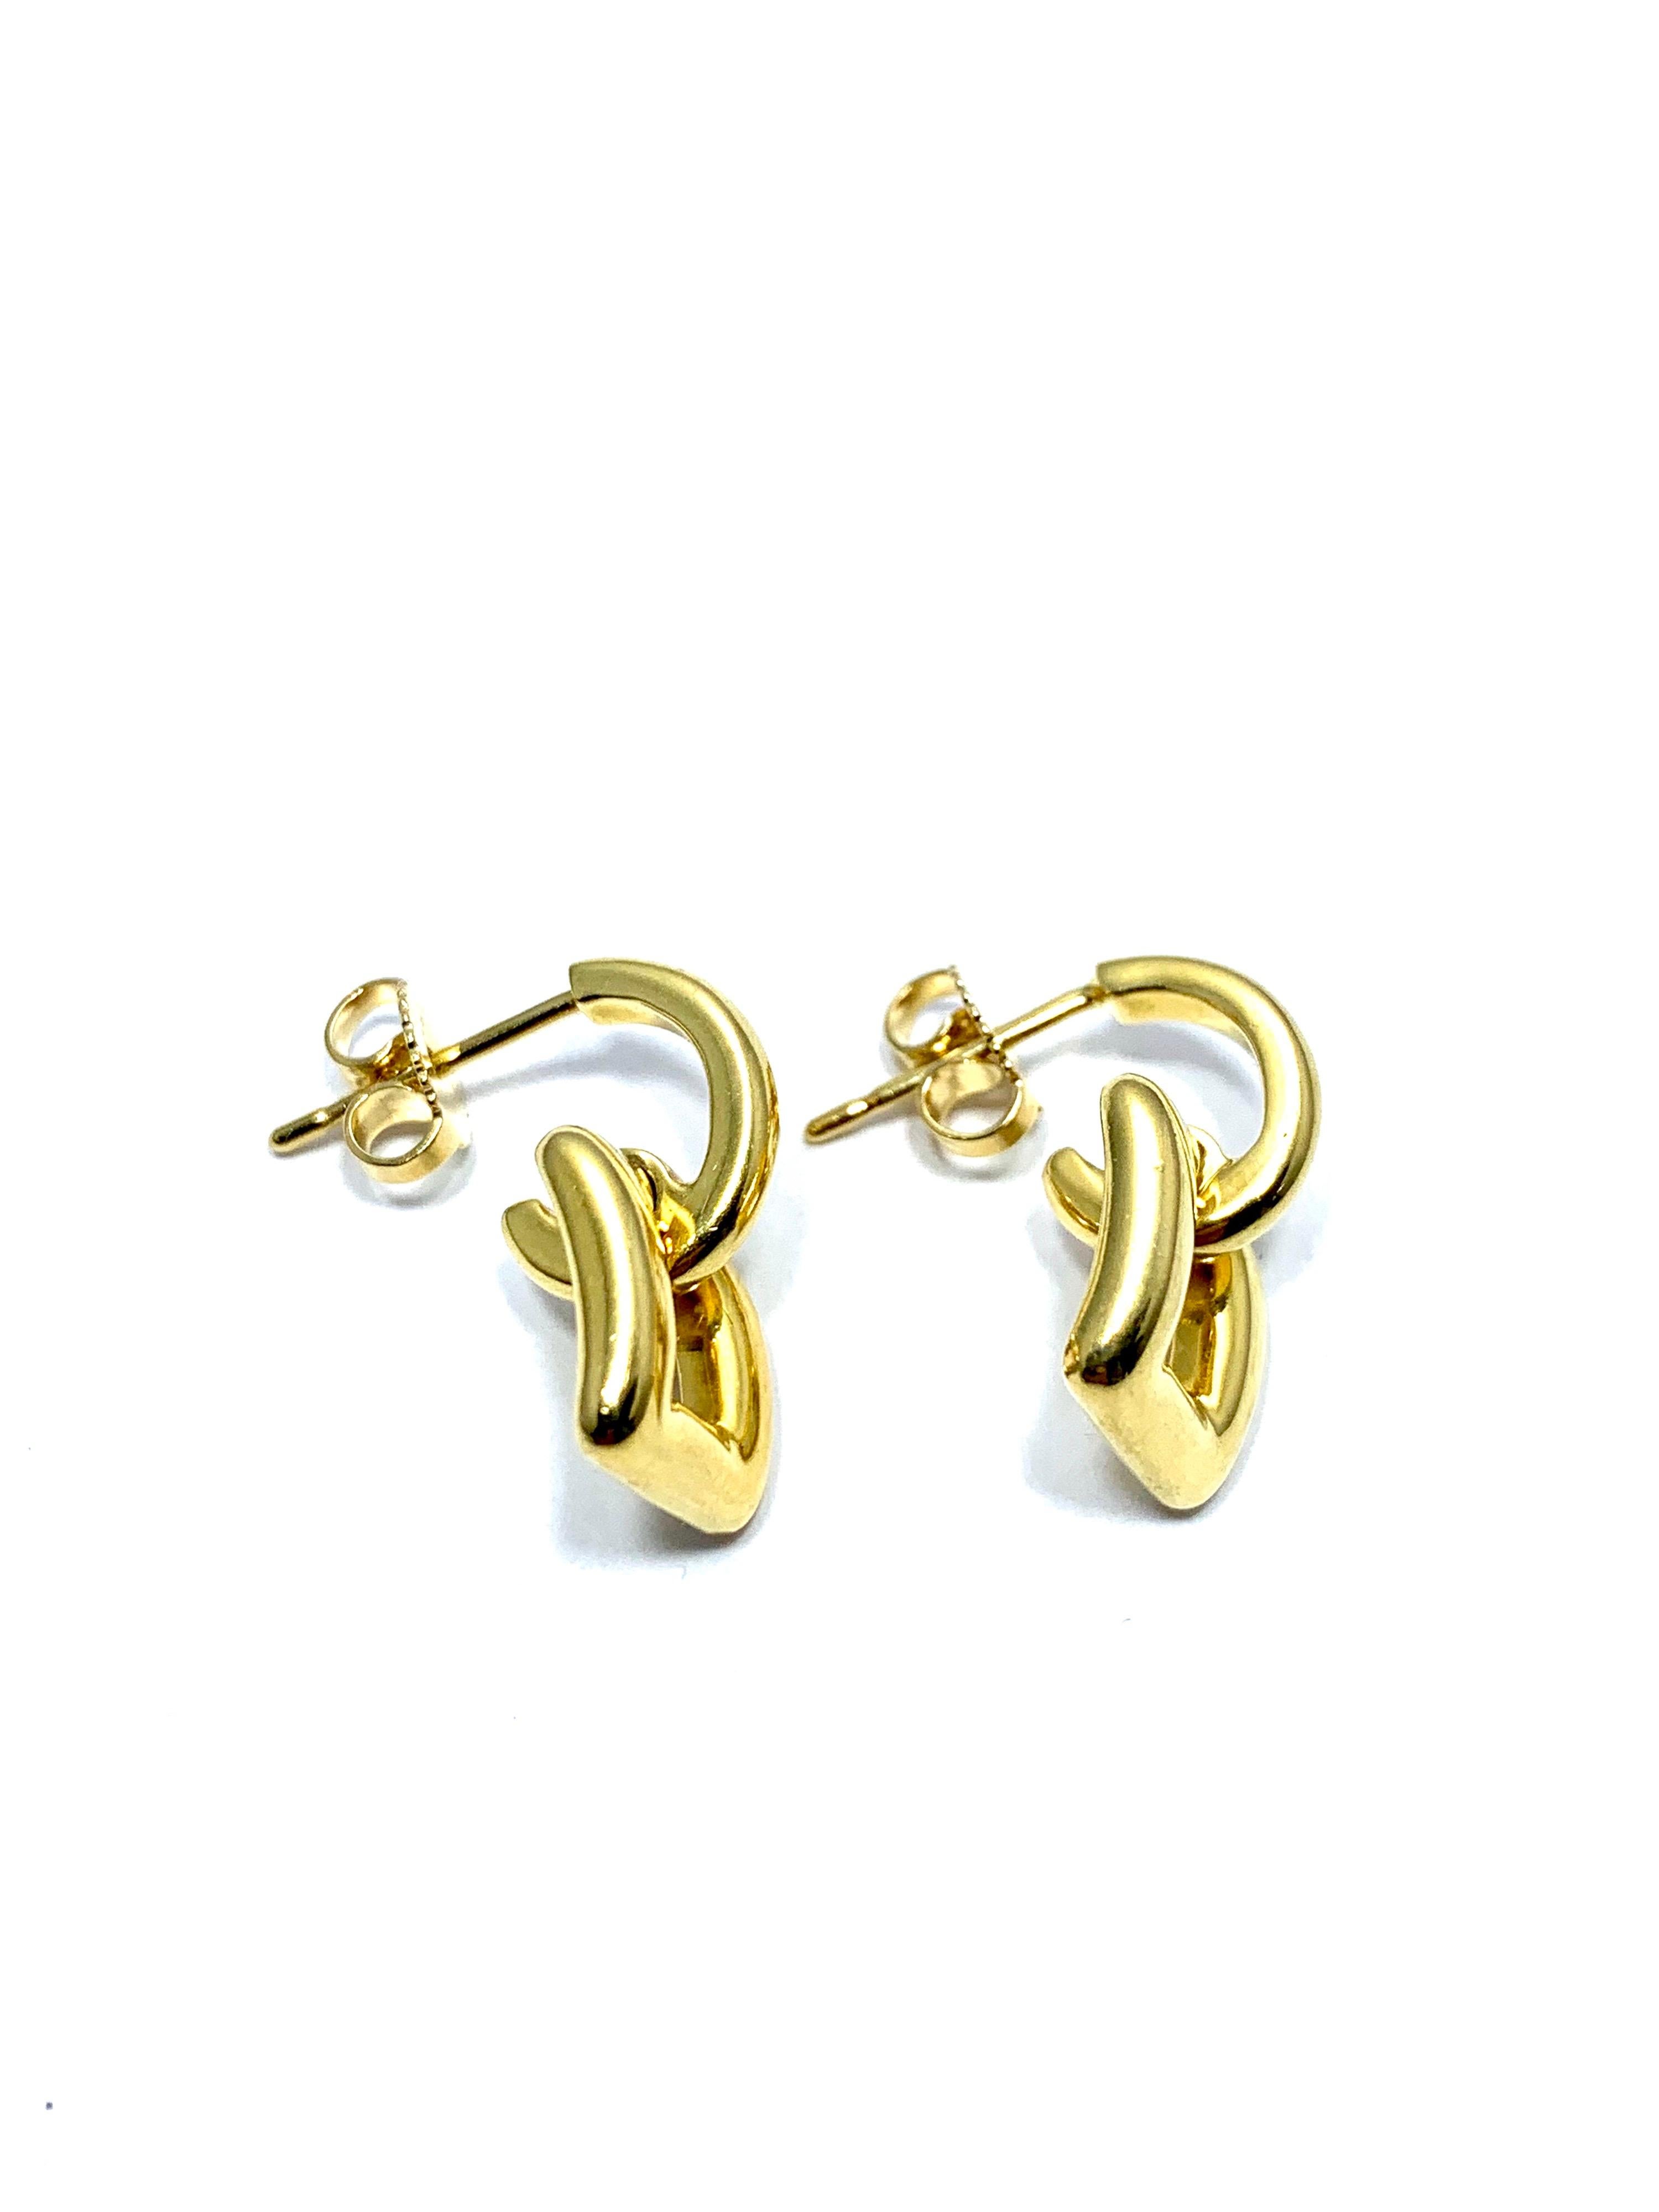 Women's or Men's Tiffany & Co. 18 Karat Yellow Gold Door Knocker Earrings